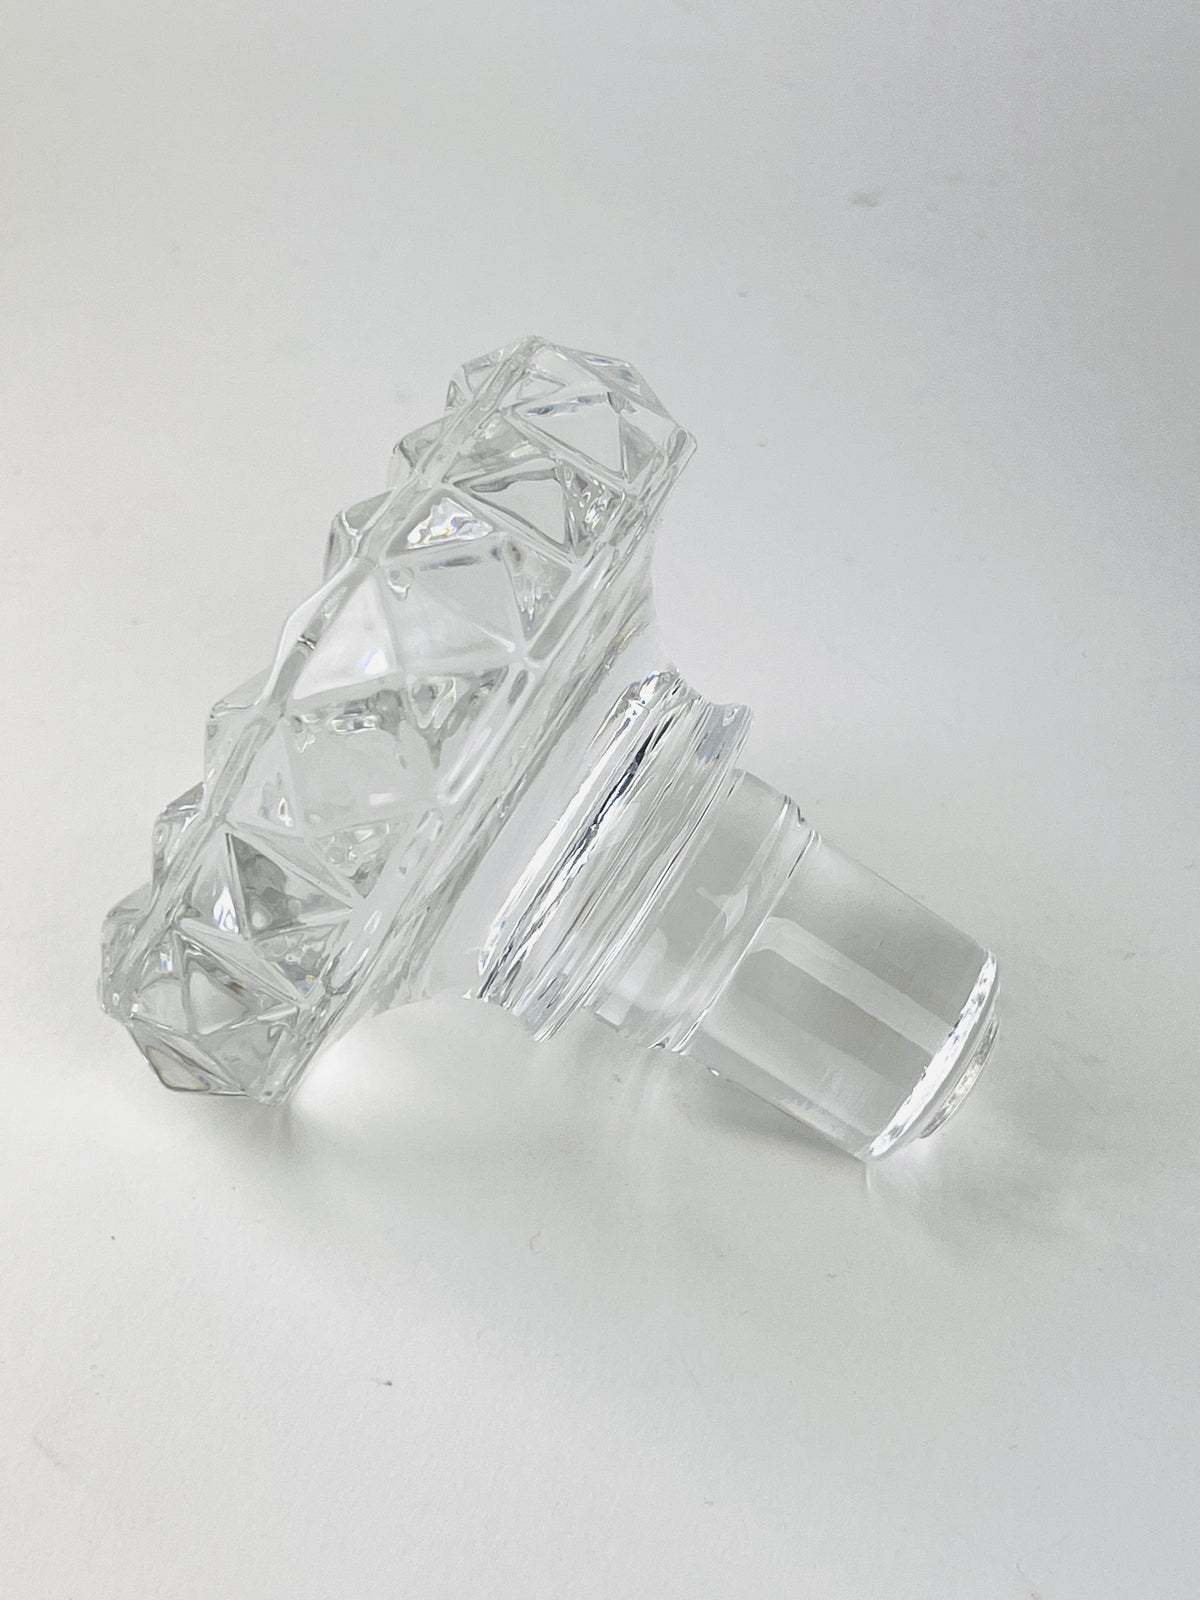 Vintage Crystal Decanter